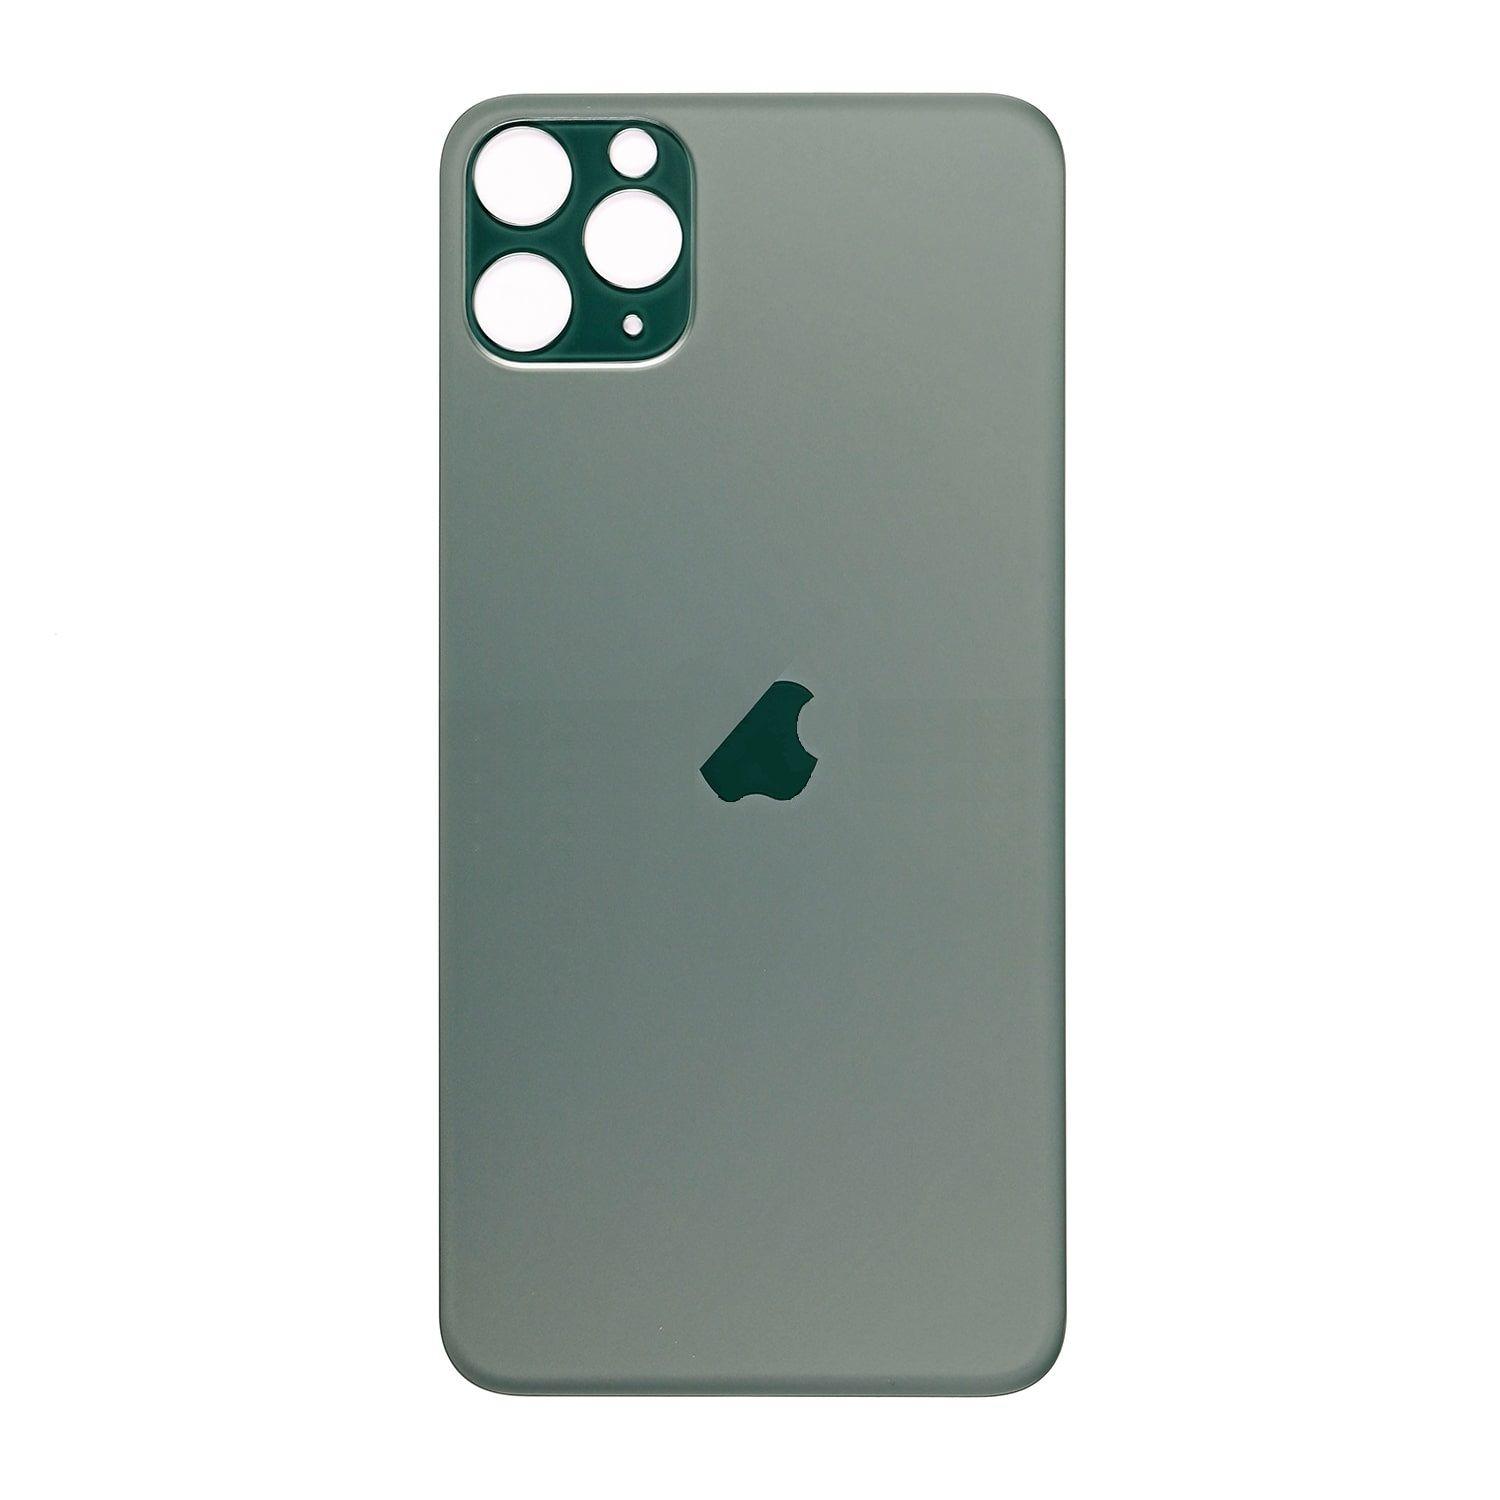 Kryt baterie iPhone 11 Pro zelený bez sklíčka kamery